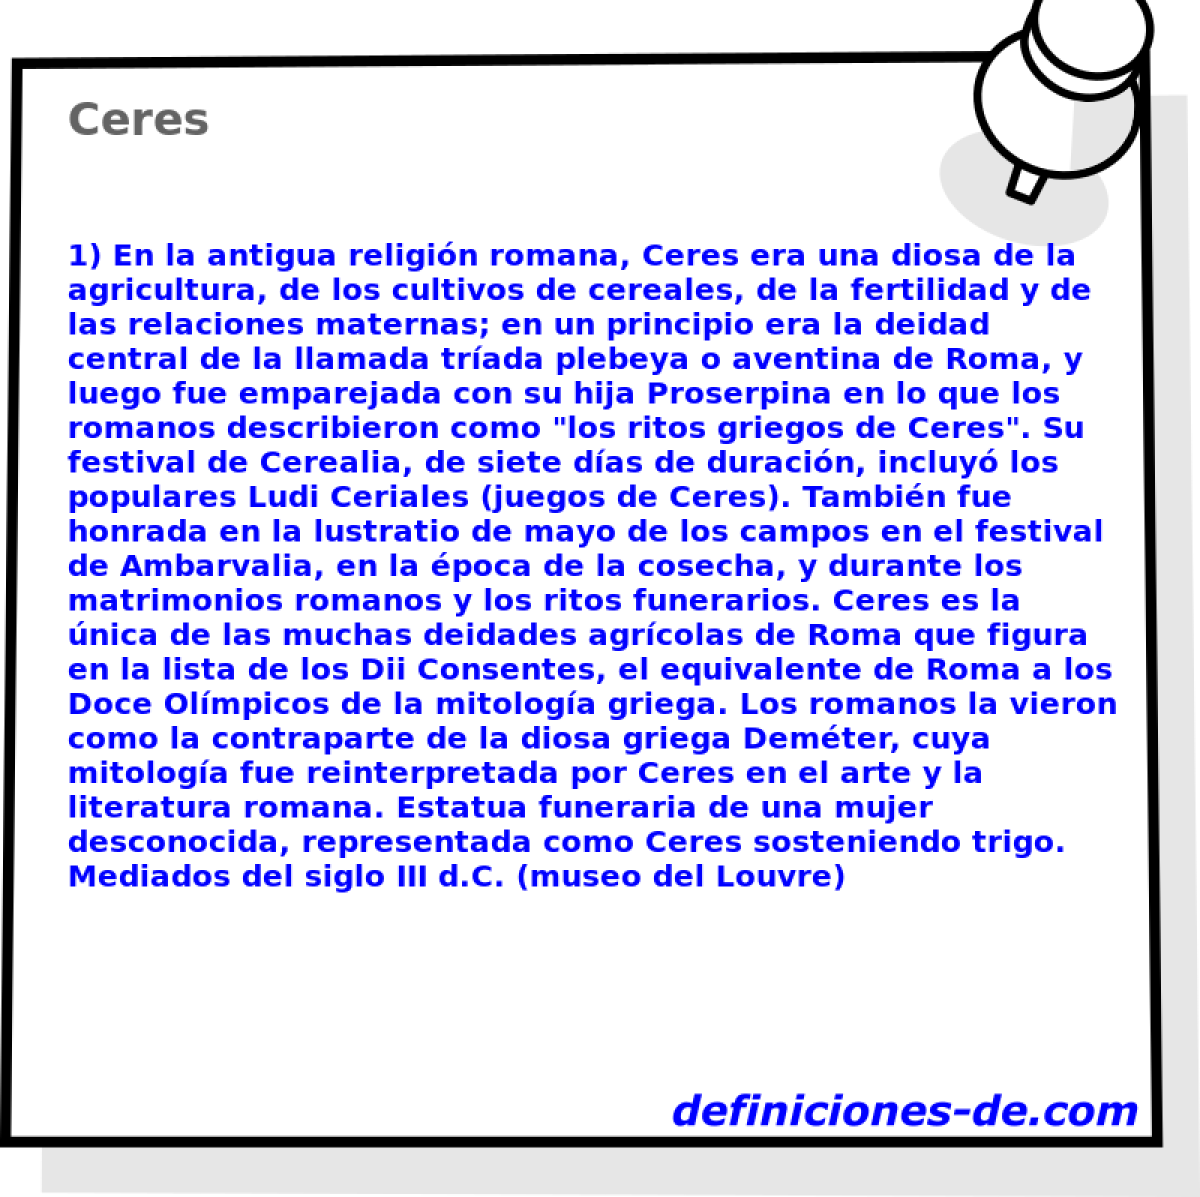 Ceres 